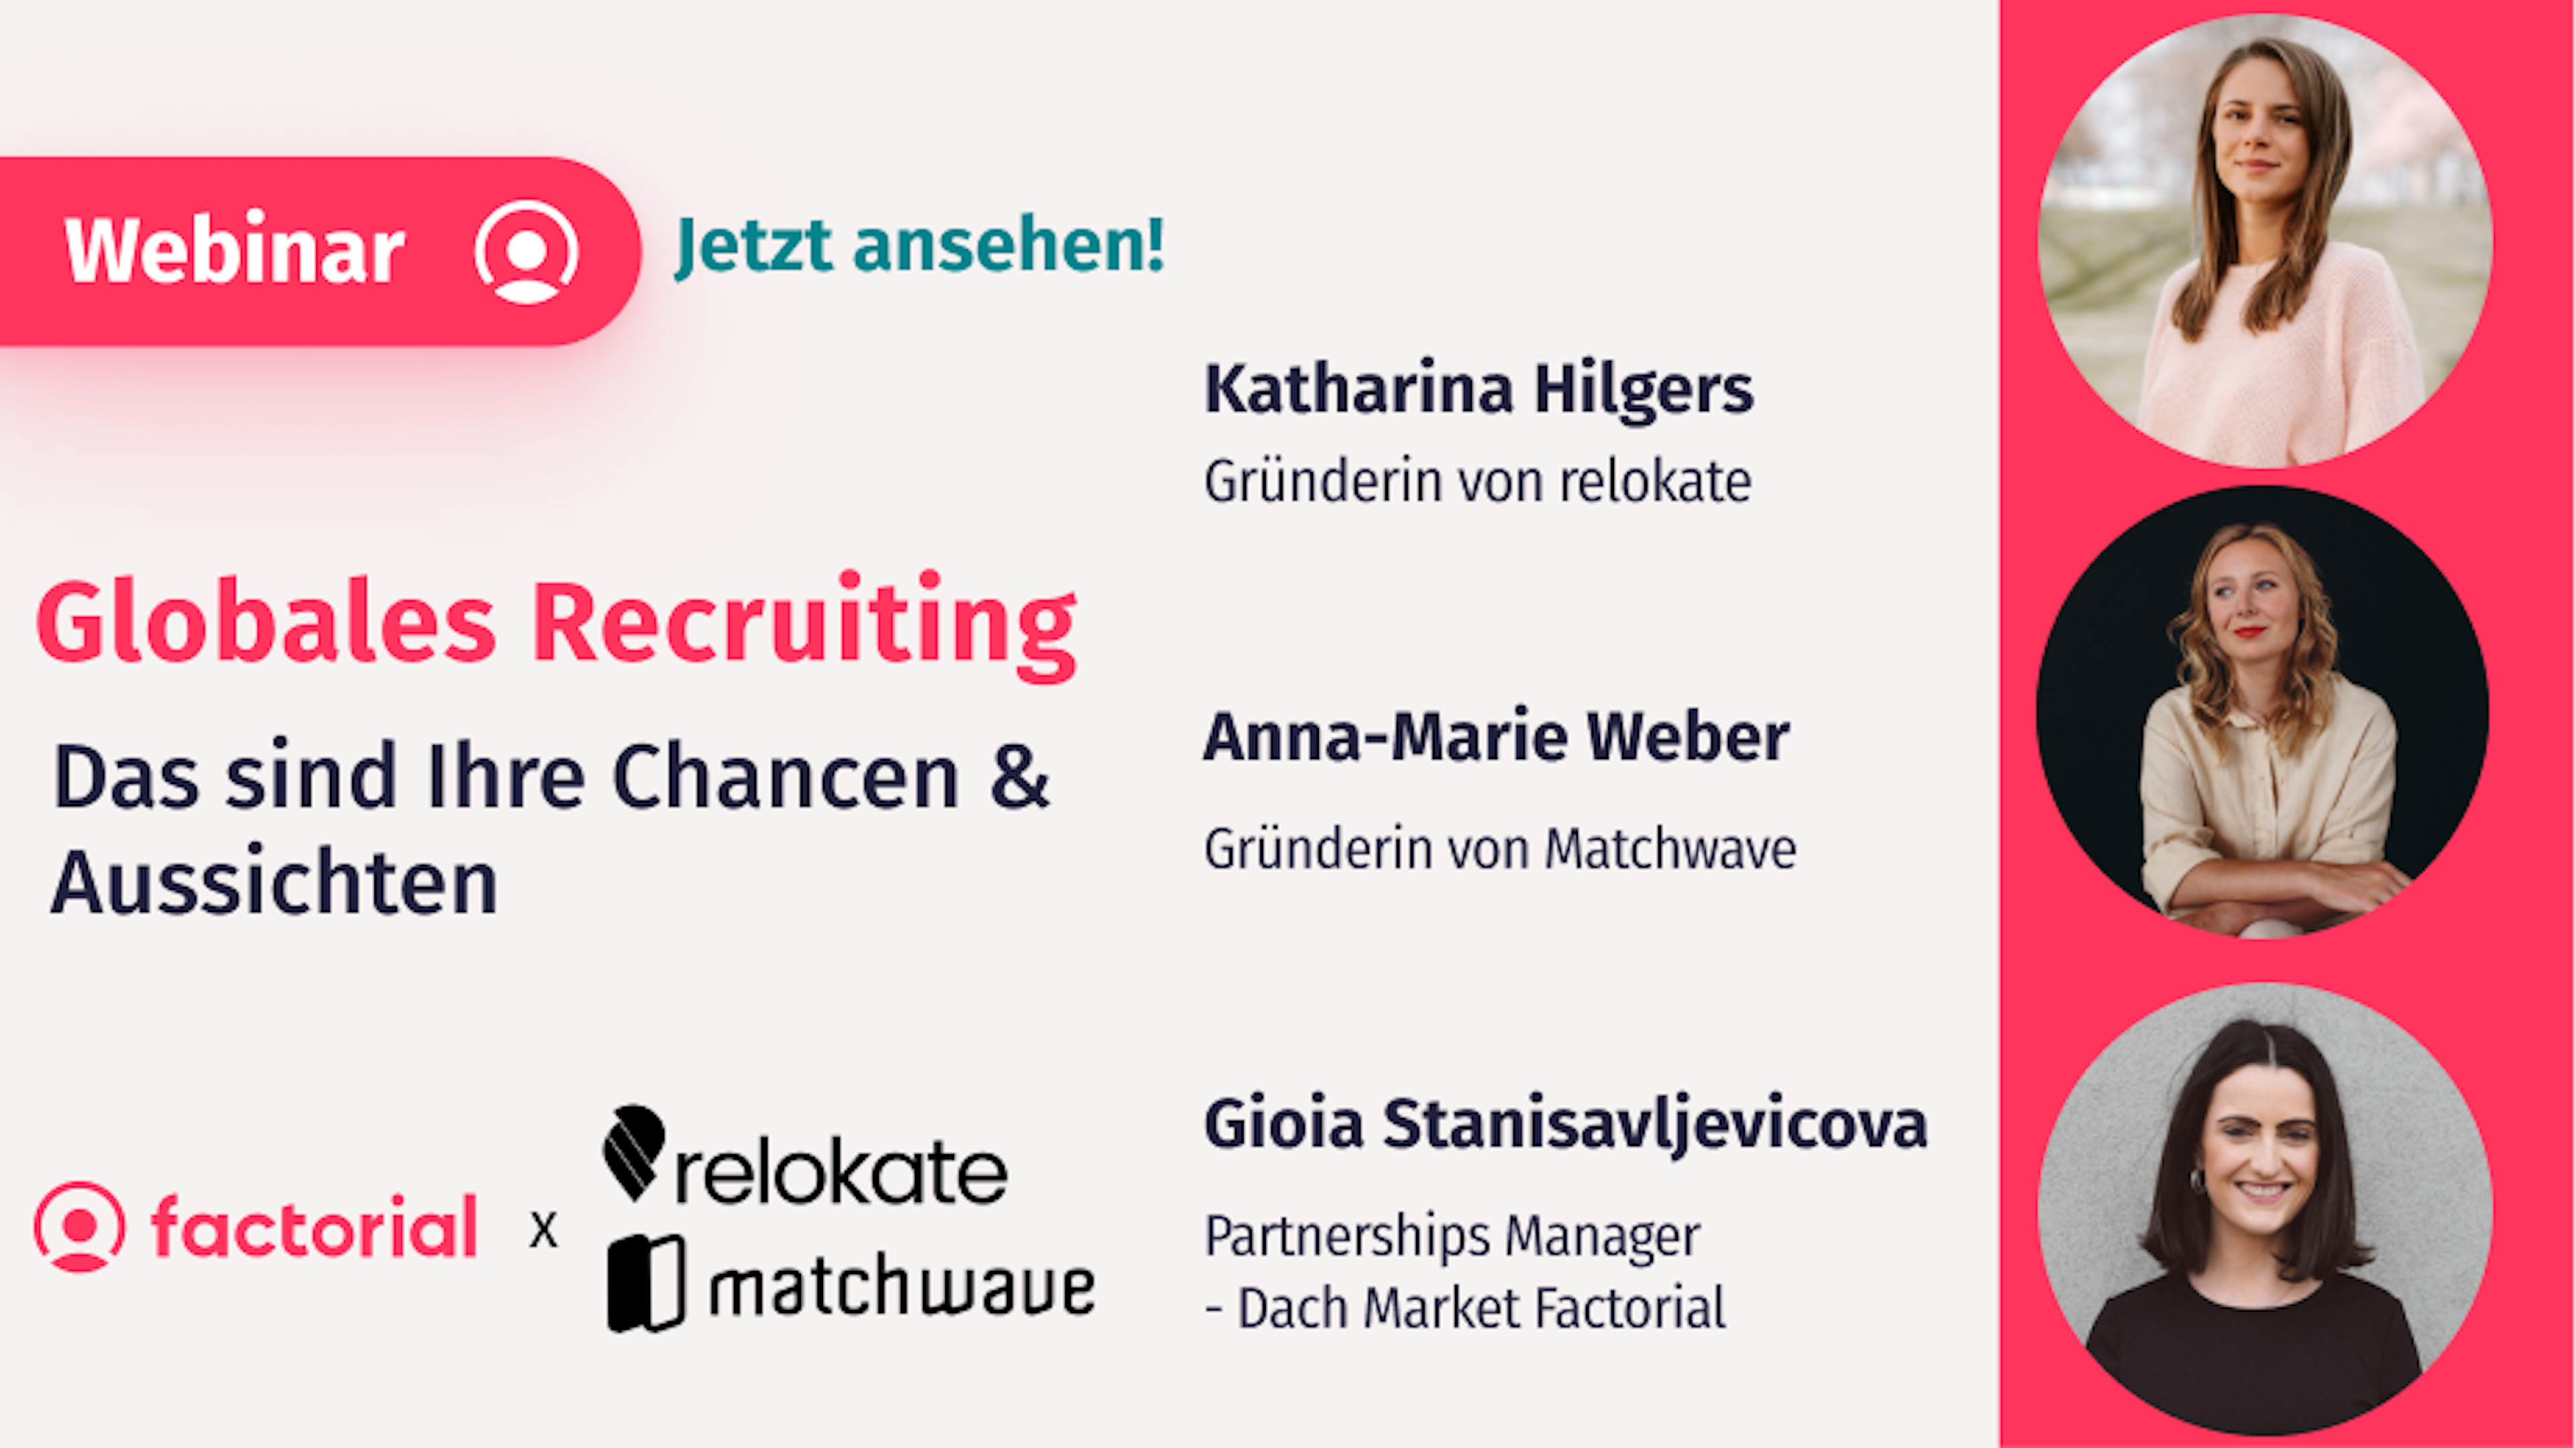 Webinar mit Katharina Hilgers und Anna-Marie Weber zum globalen Recruiting